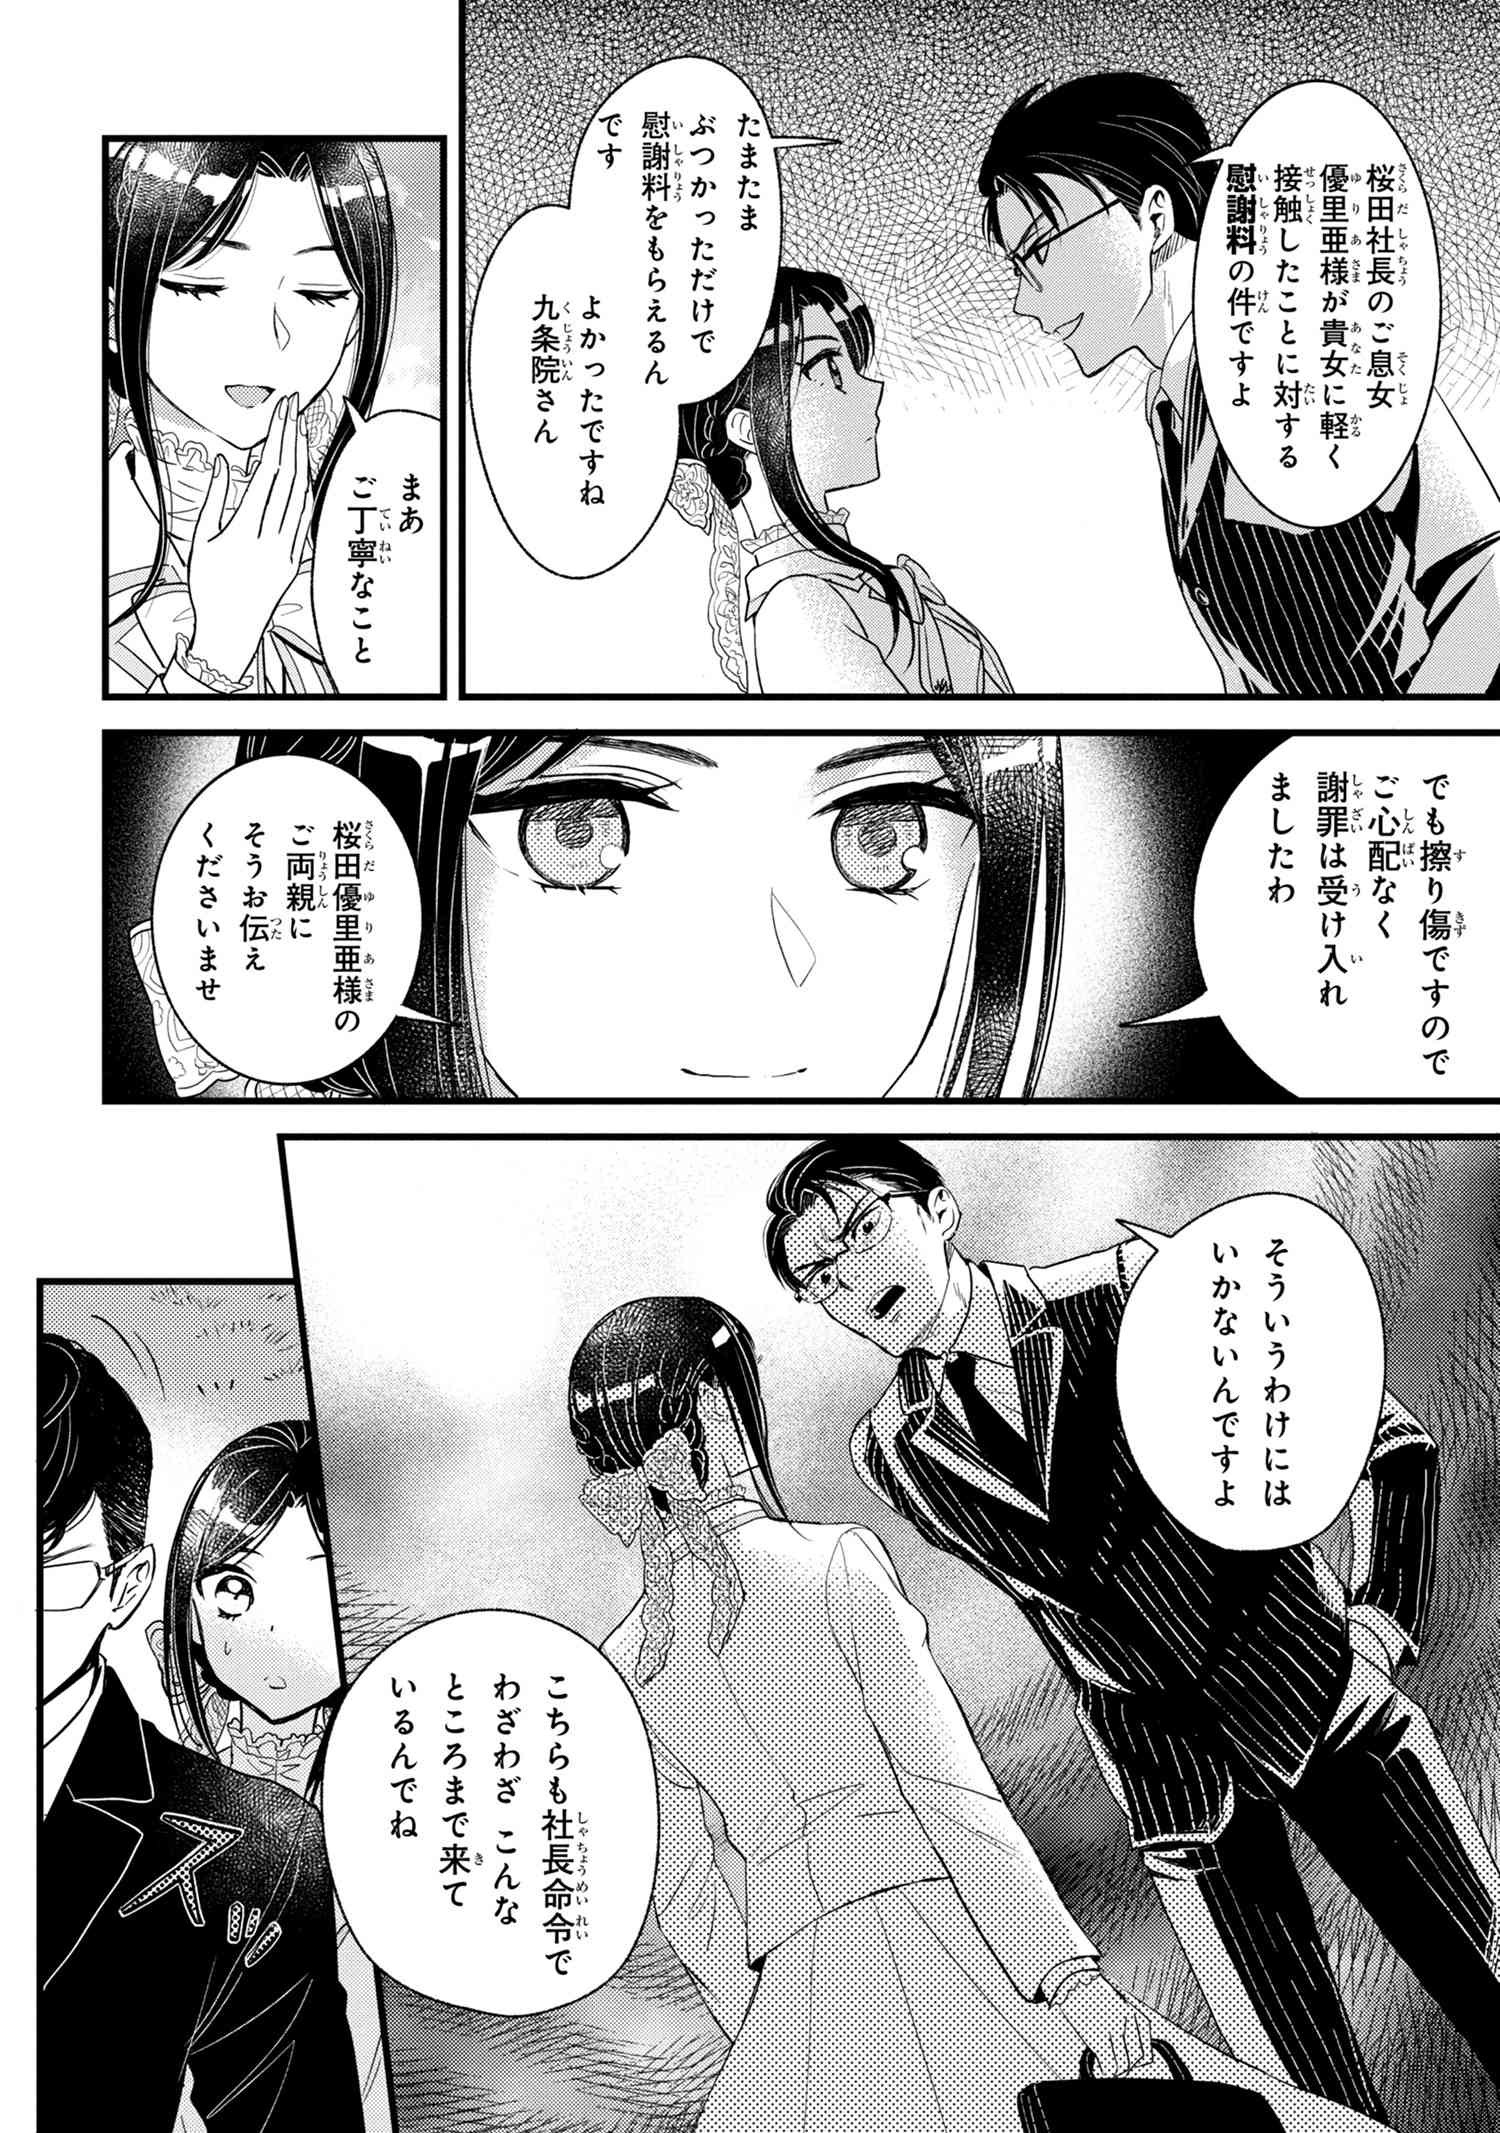 Reiko no Fuugi Akuyaku Reijou to Yobarete imasu ga, tada no Binbou Musume desu - Chapter 6-1 - Page 2